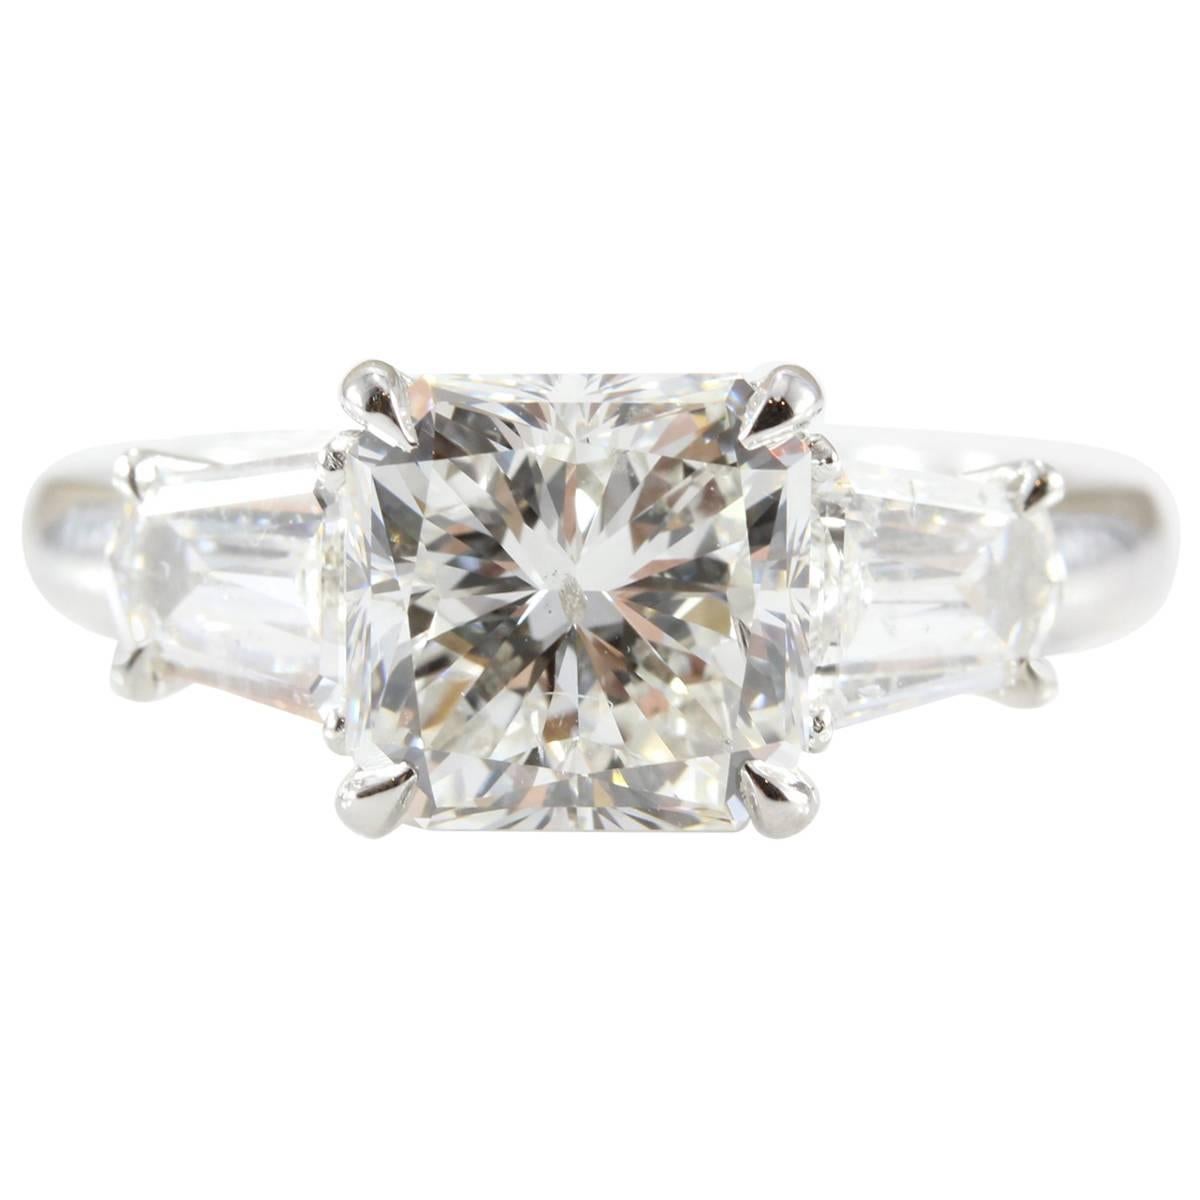 3.22 Carat Diamond Radiant Cut Platinum Engagement Ring